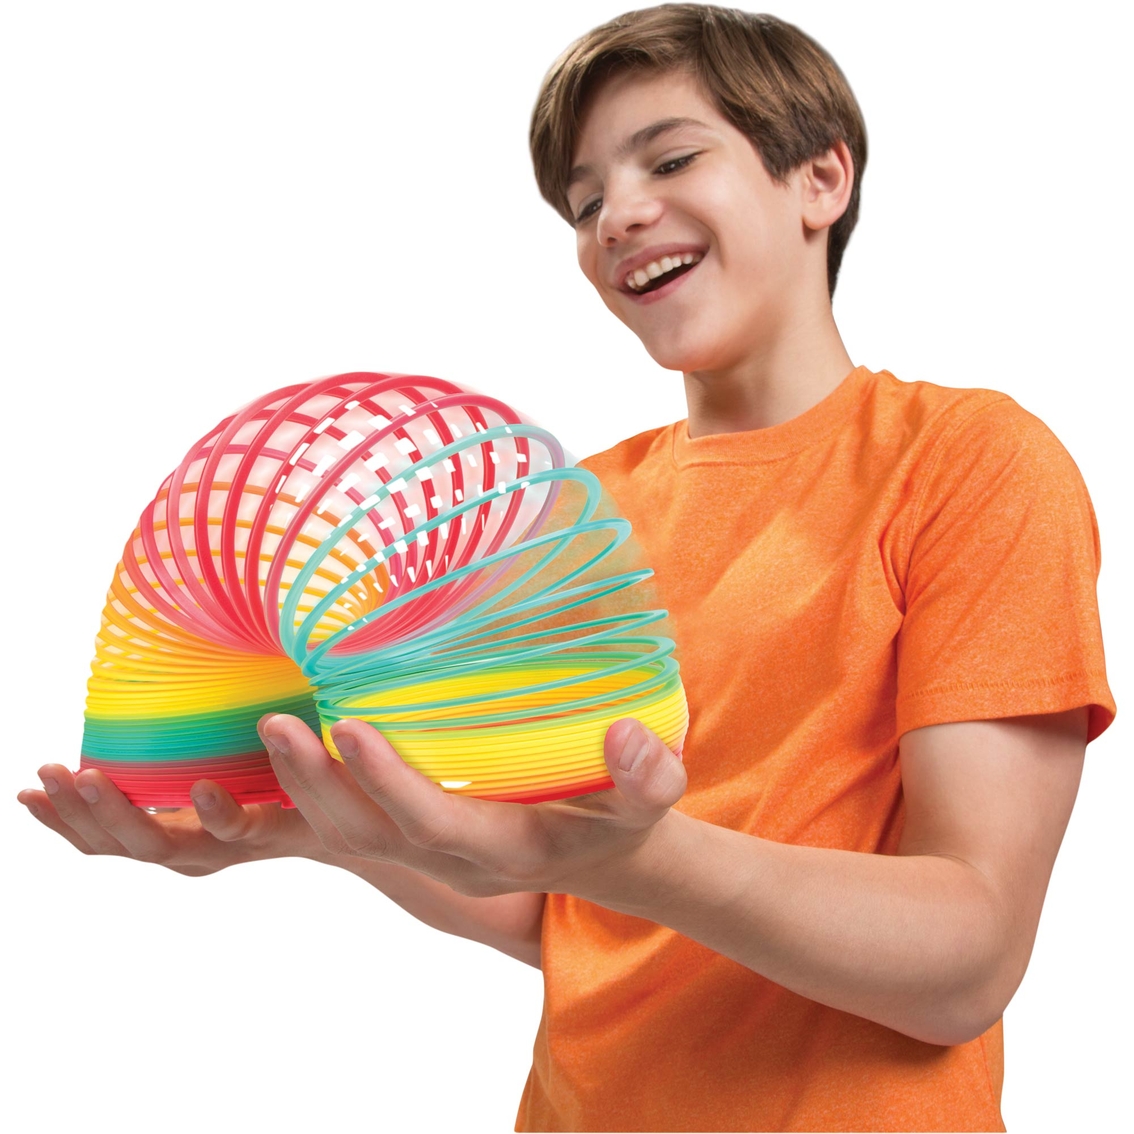 Slinky Original Brand Ginormous Rainbow Slinky - Image 2 of 2